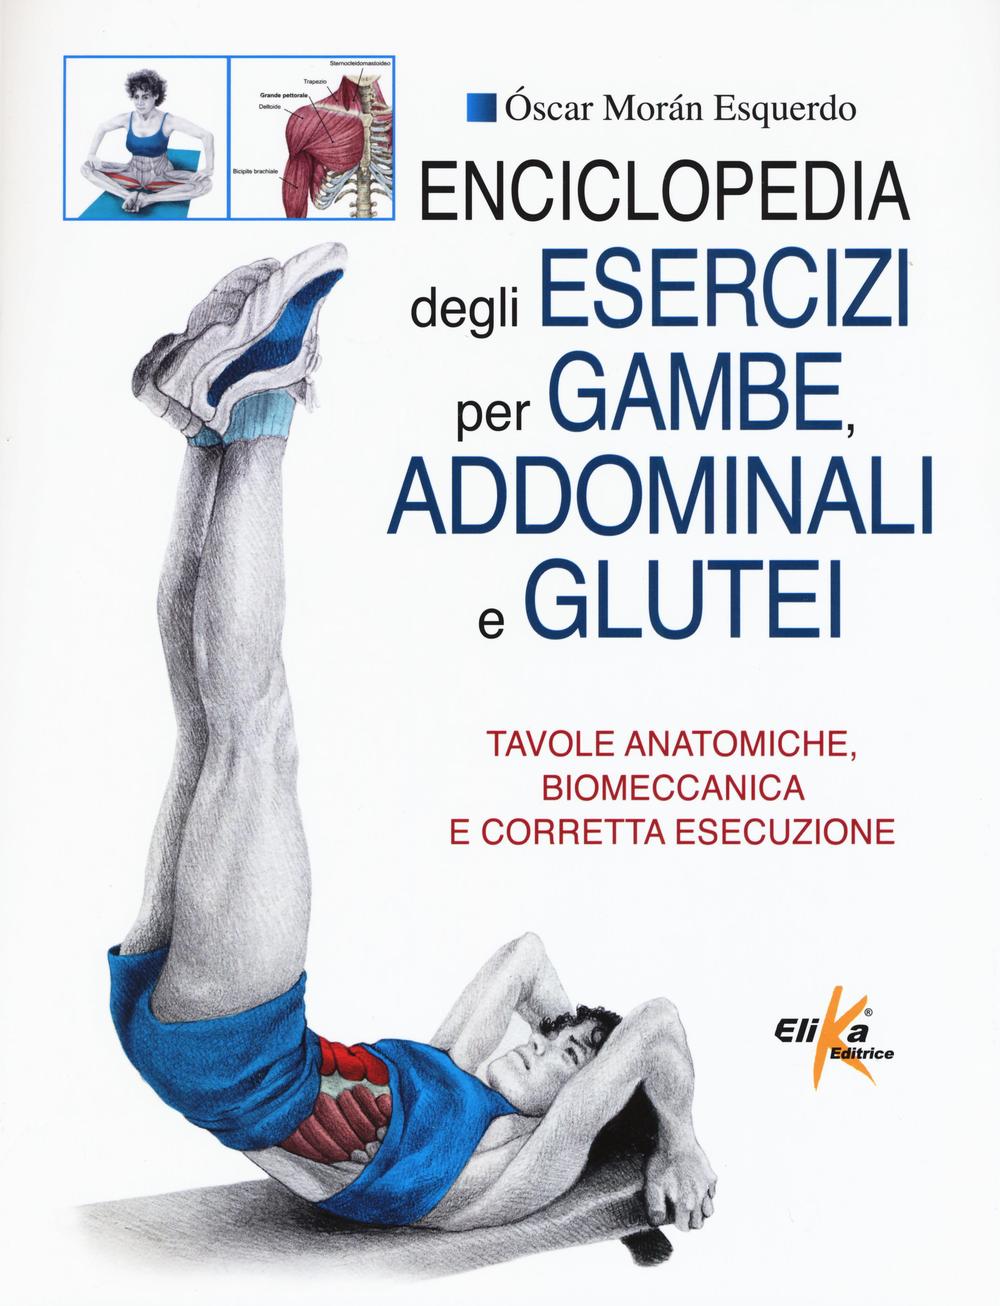 Kniha Enciclopedia degli esercizi per gambe, addominali e glutei. Tavole anatomiche, biomeccanica e corretta esecuzione Oscar Moran Esquerdo